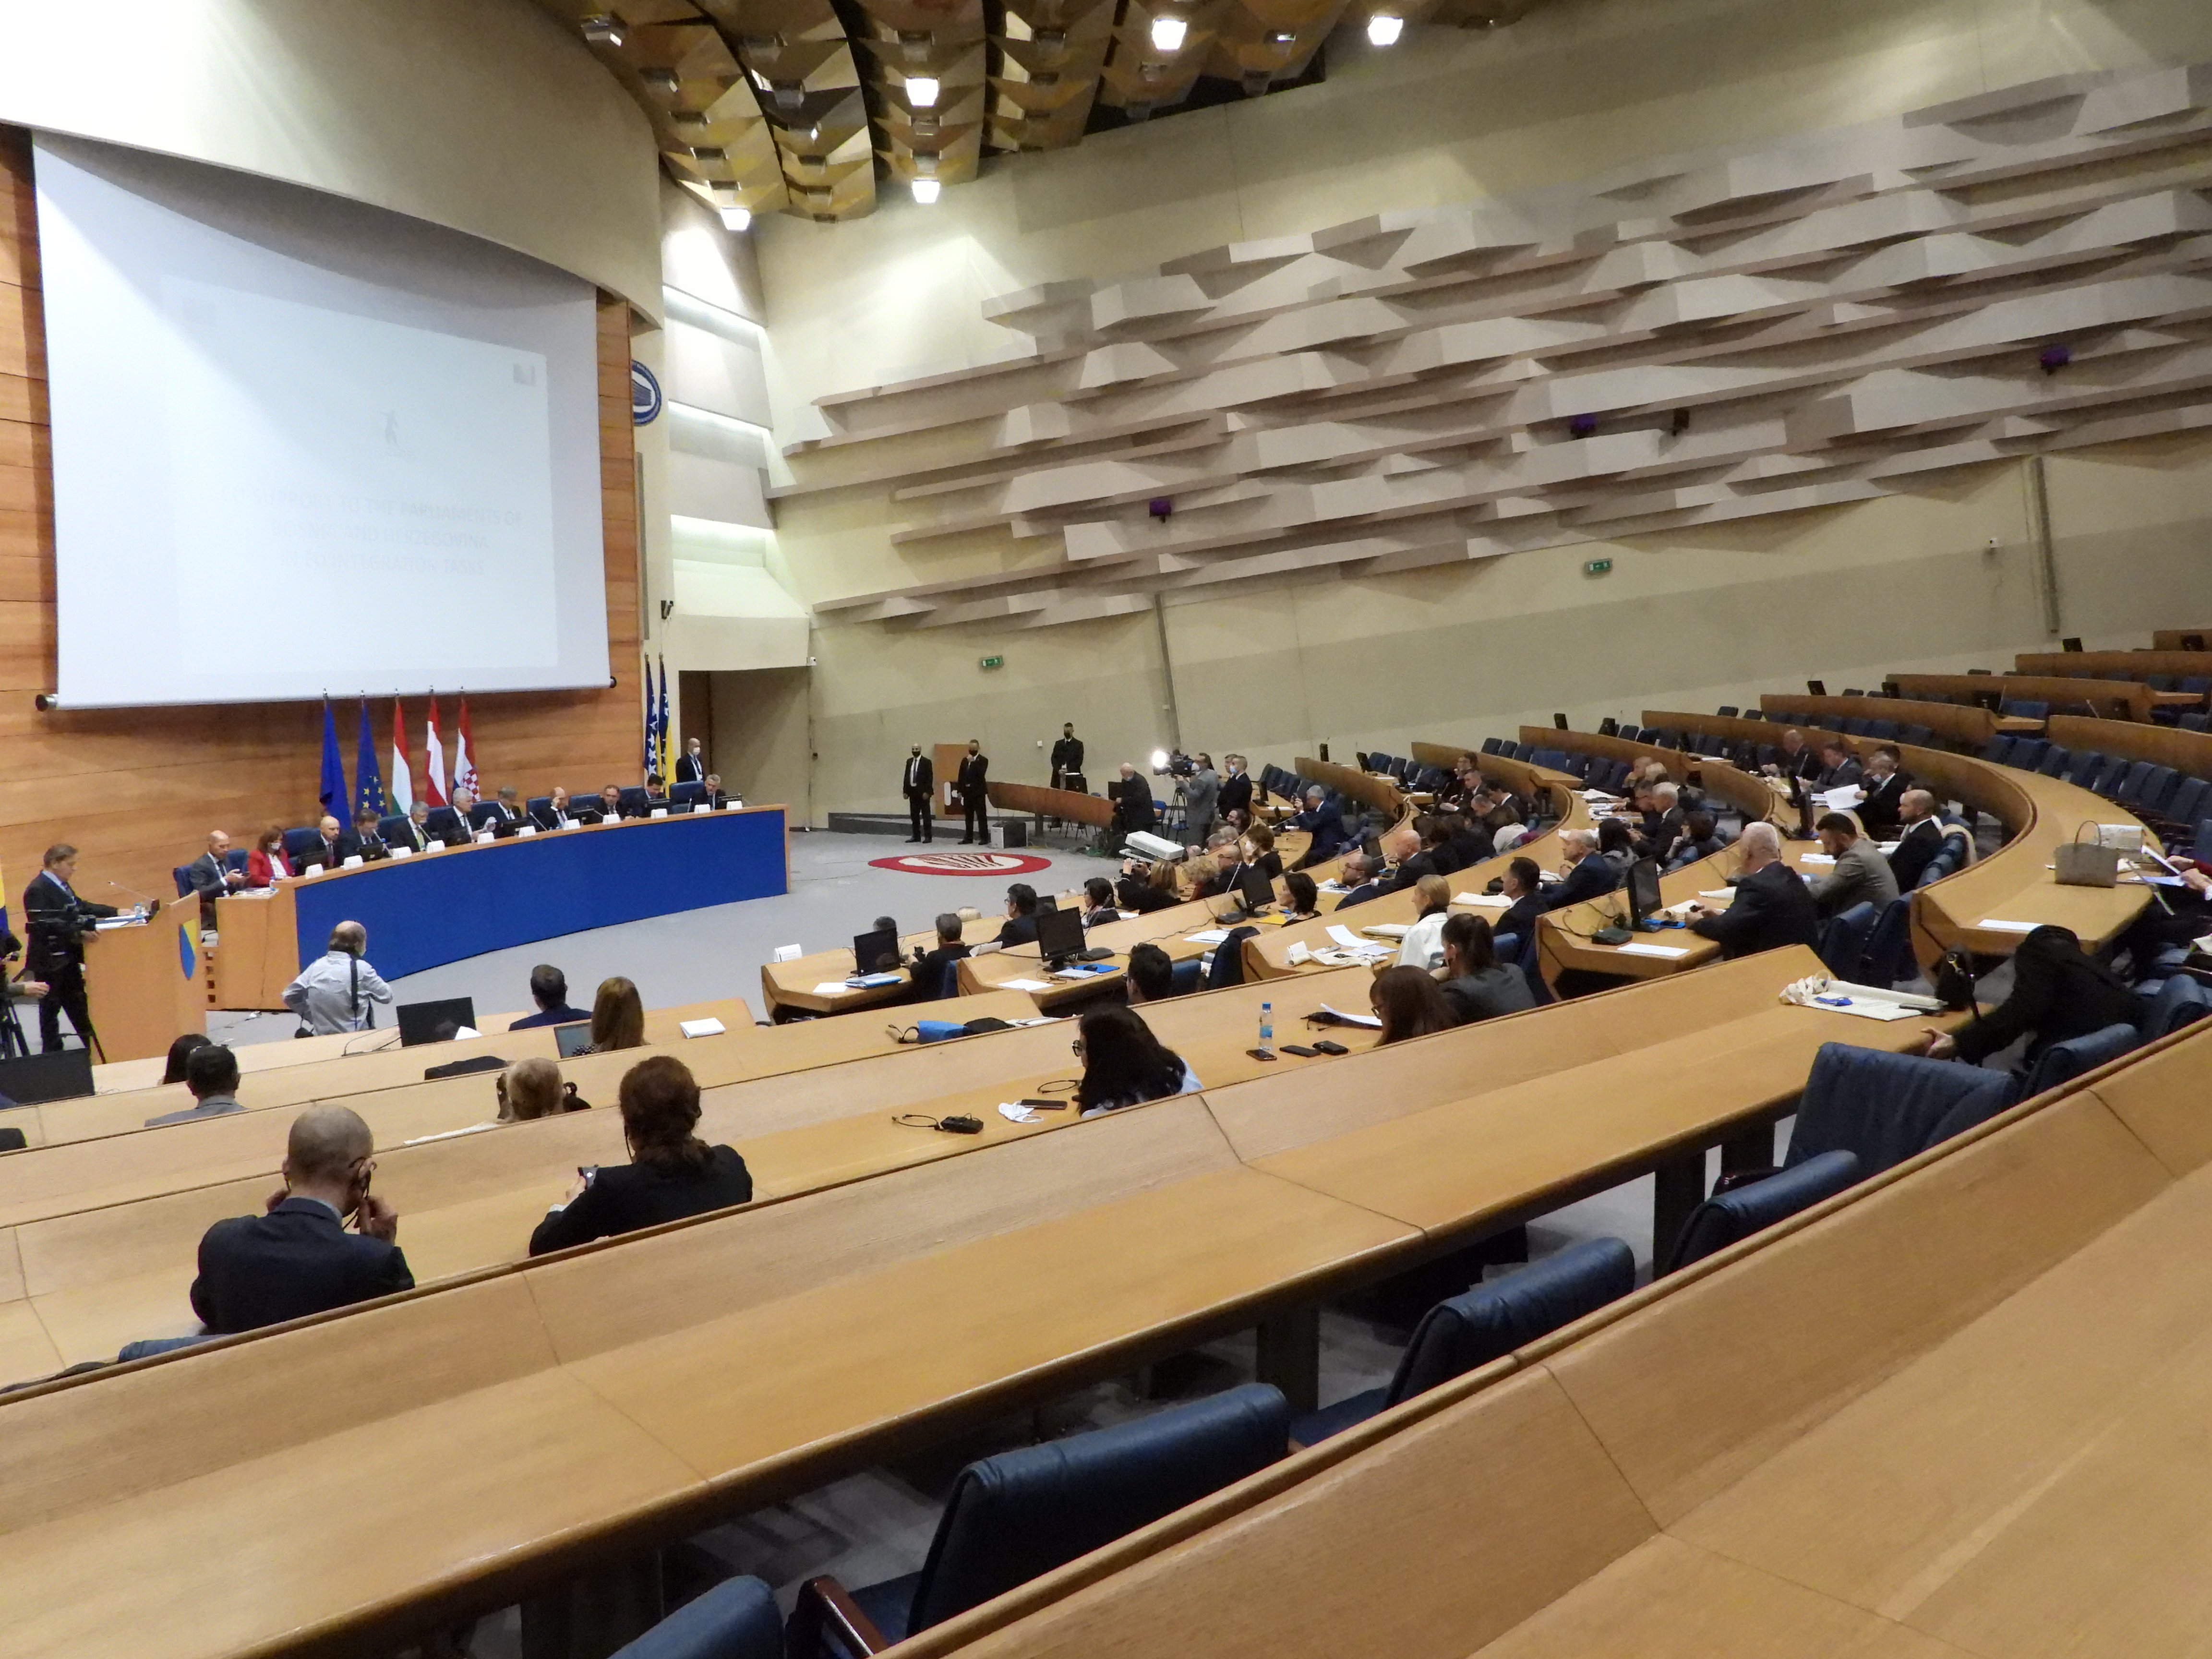 Završna ceremonija Twinning projekta “Potpora EU parlamentima u Bosni i Hercegovini u poslovima europskih integracija”